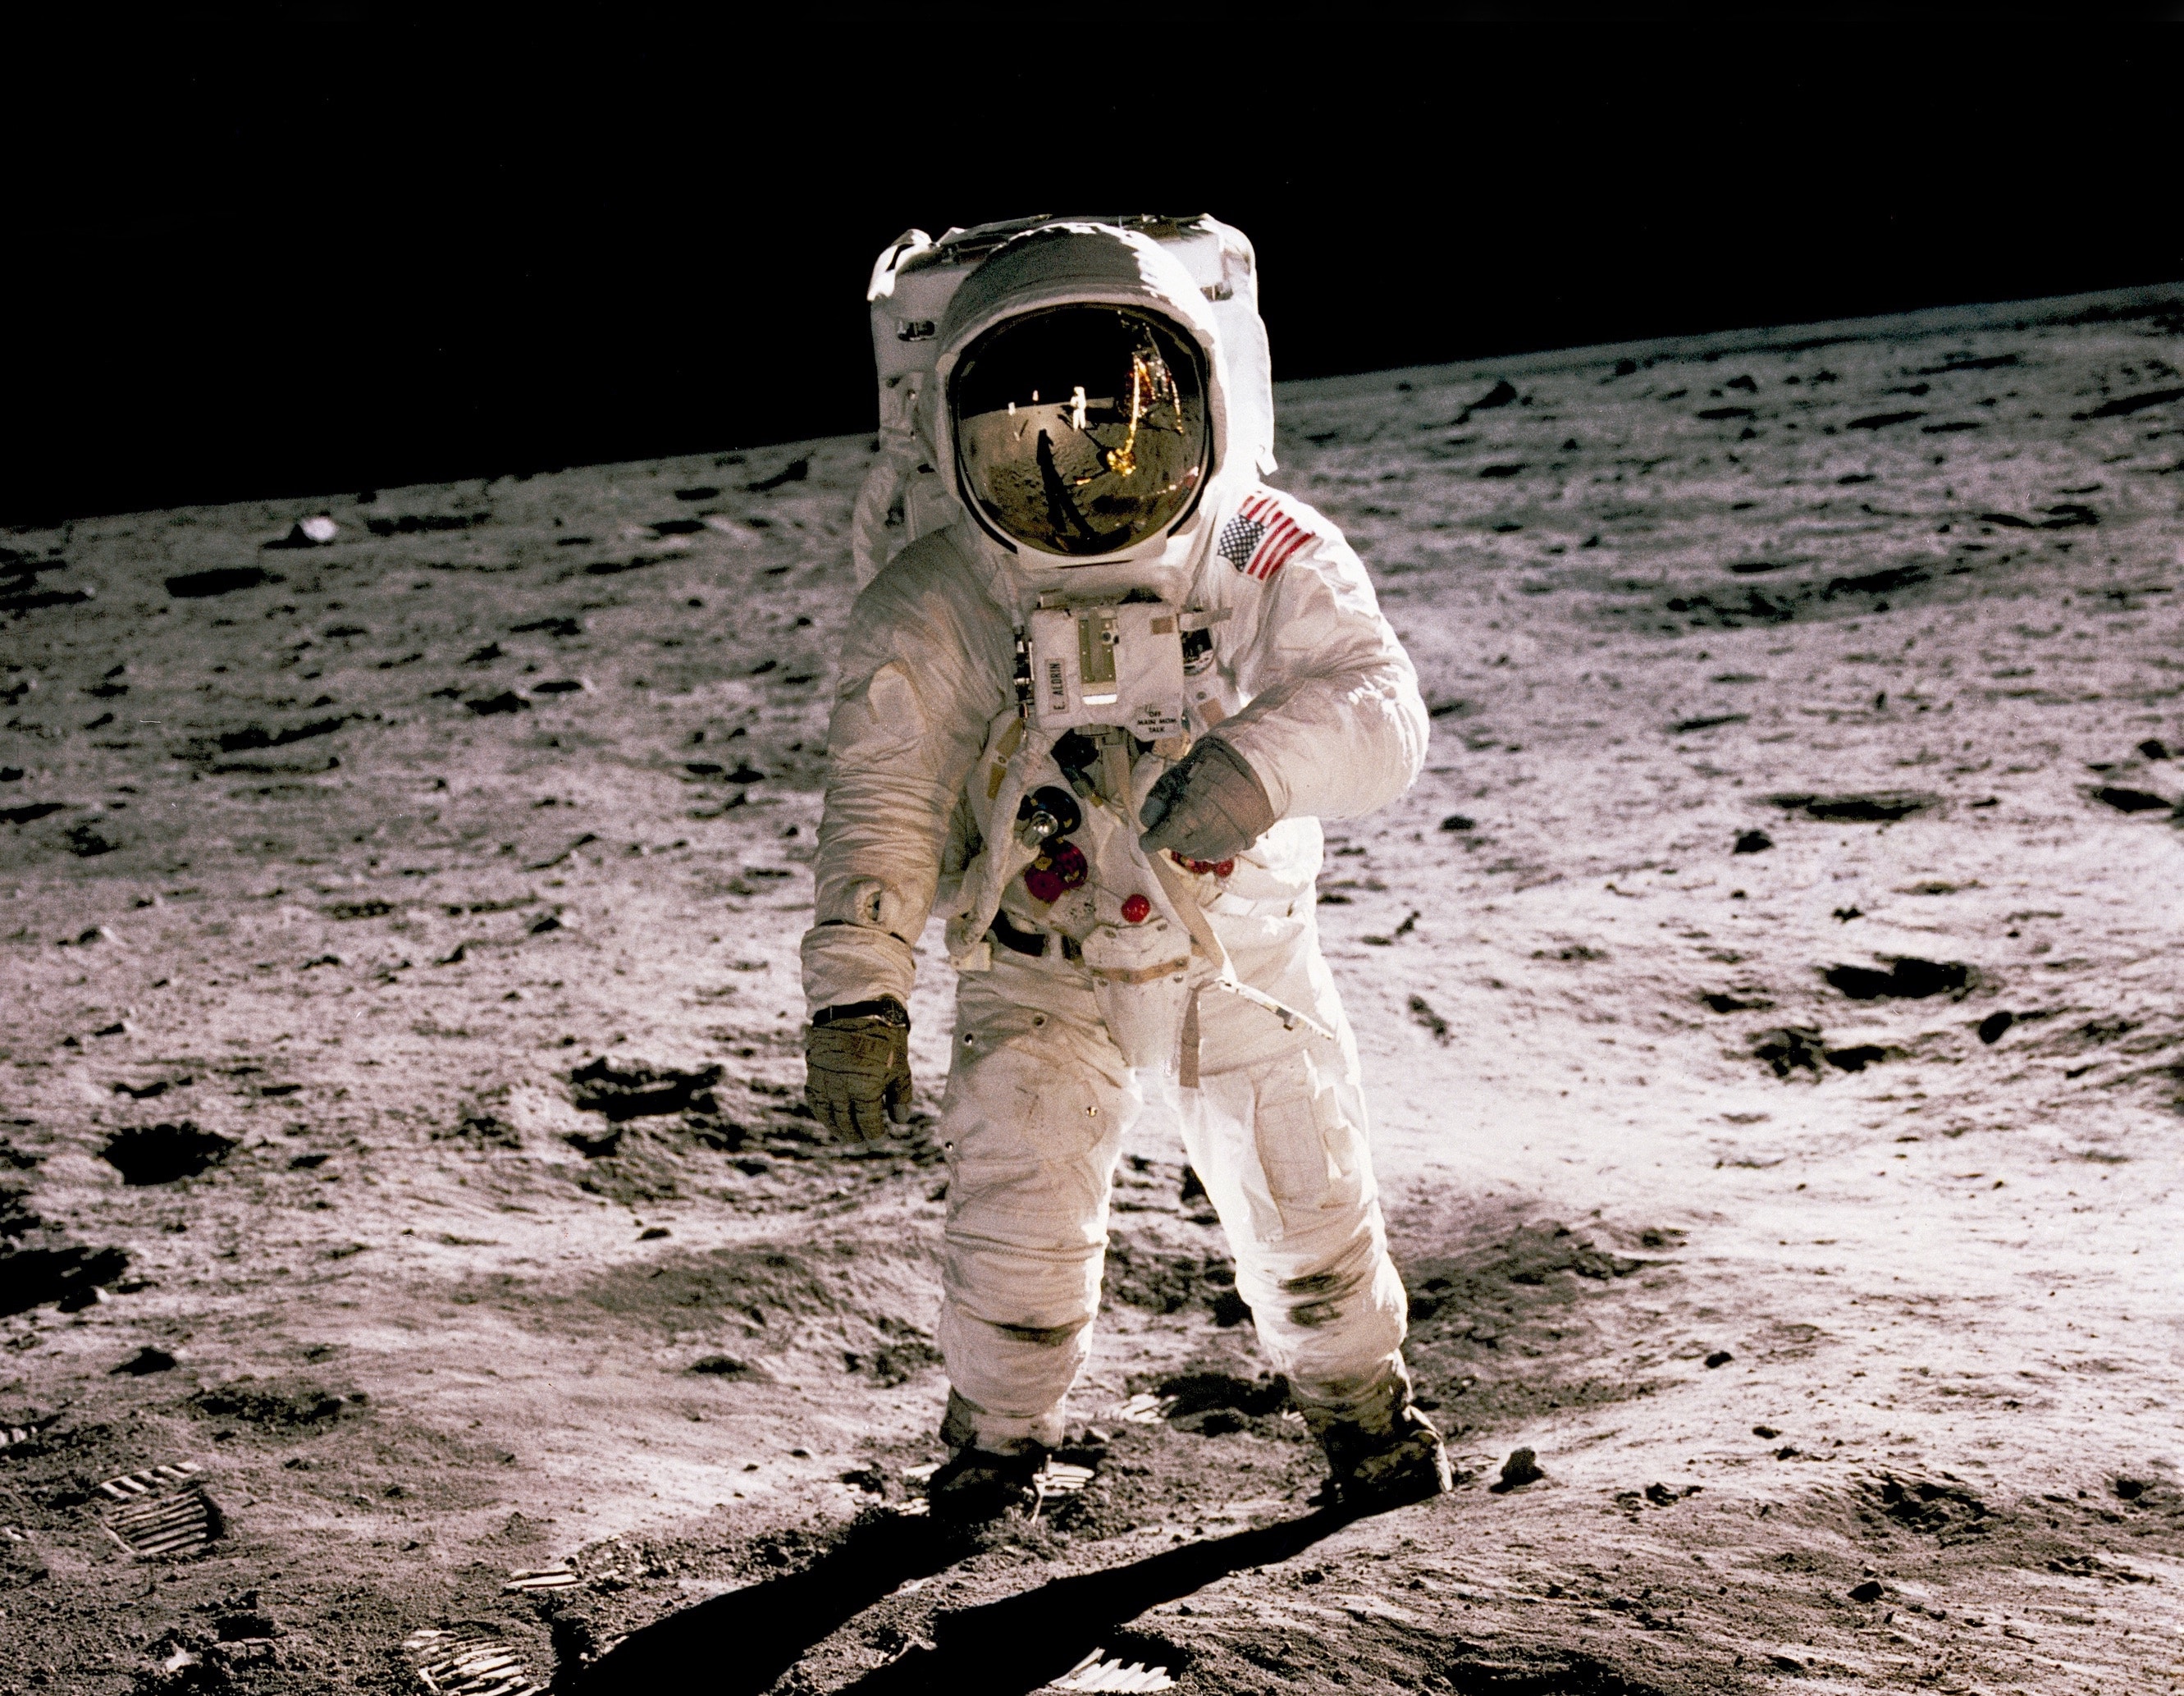 Astronaut on moon